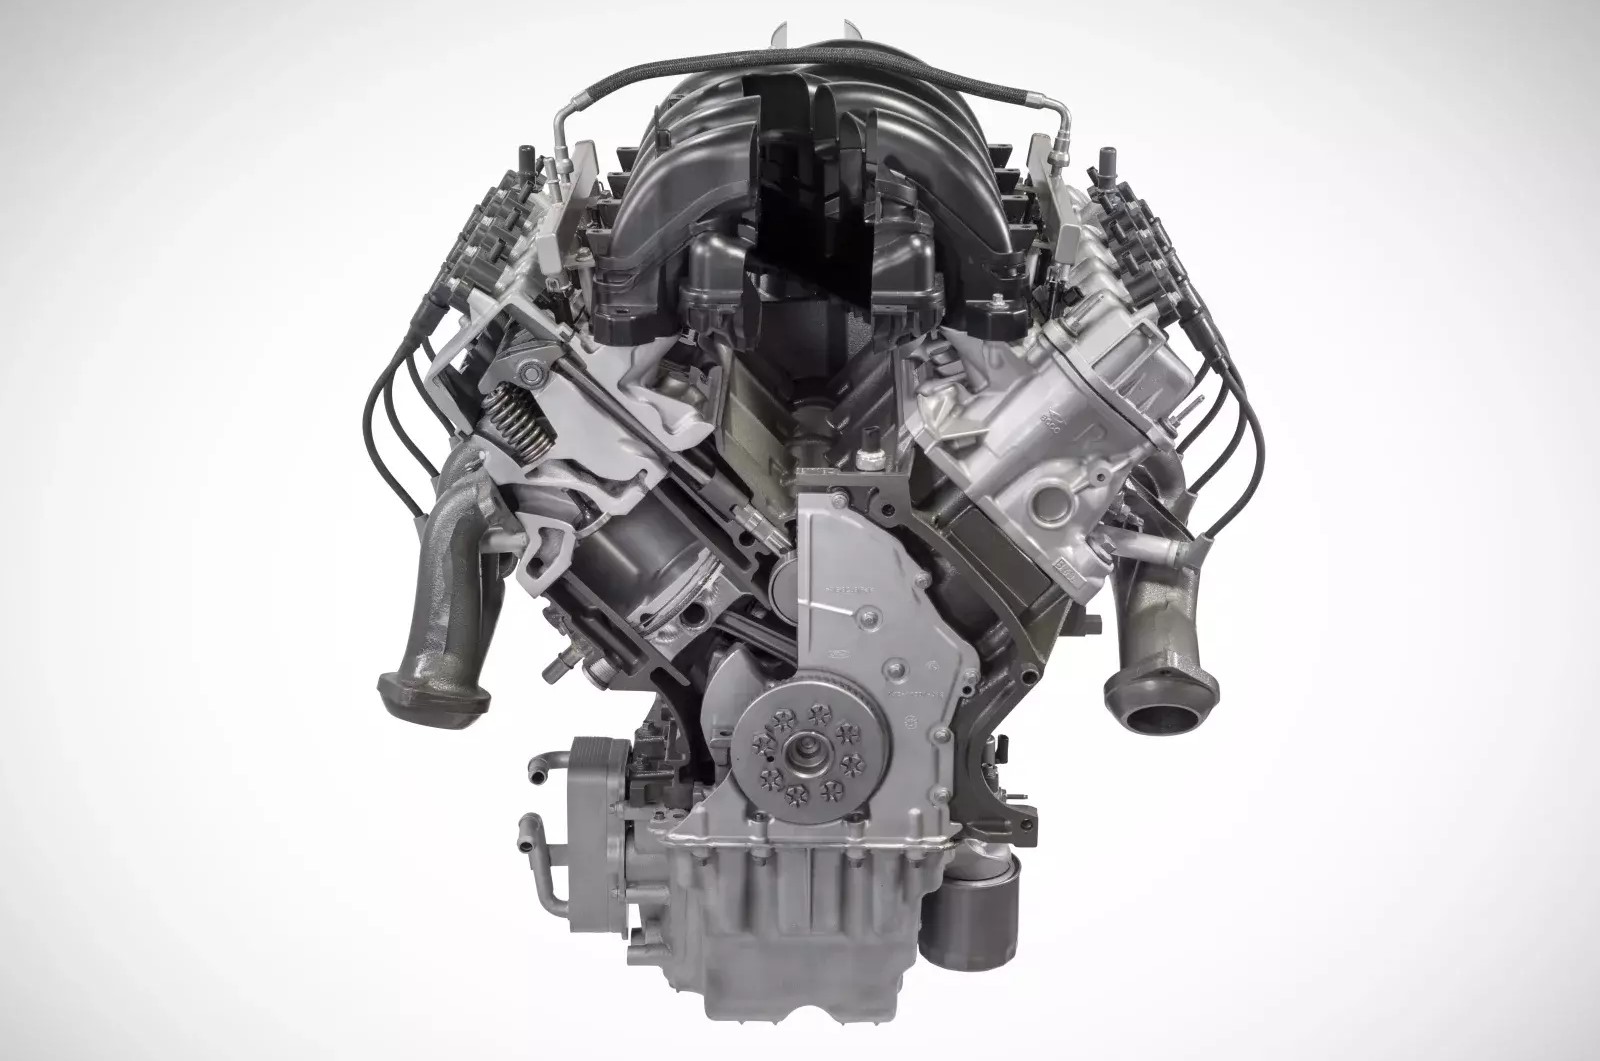 2022 Mustang 6.8 Liter V8 Rumors - 2022 Mustang 6.8 Liter V8 Rumors